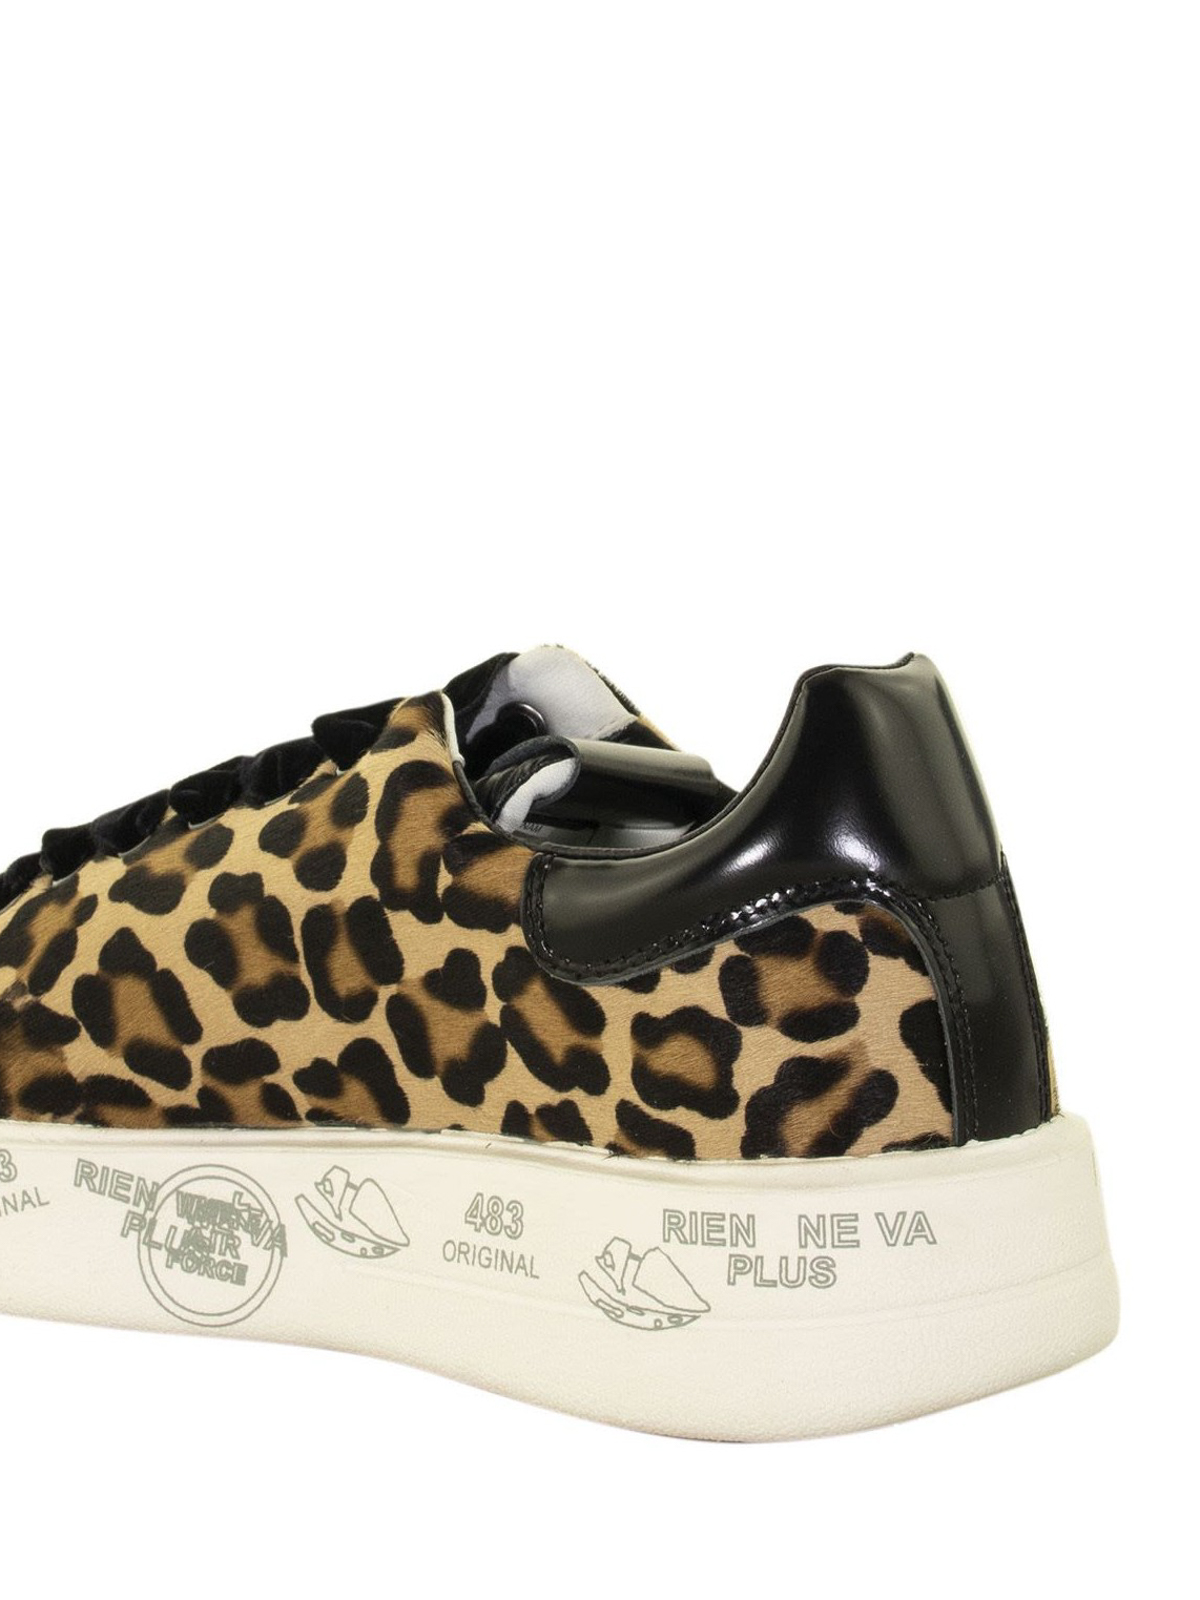 Premiata - Belle 4029 leopard sneakers - trainers - BELLE4029 | iKRIX.com